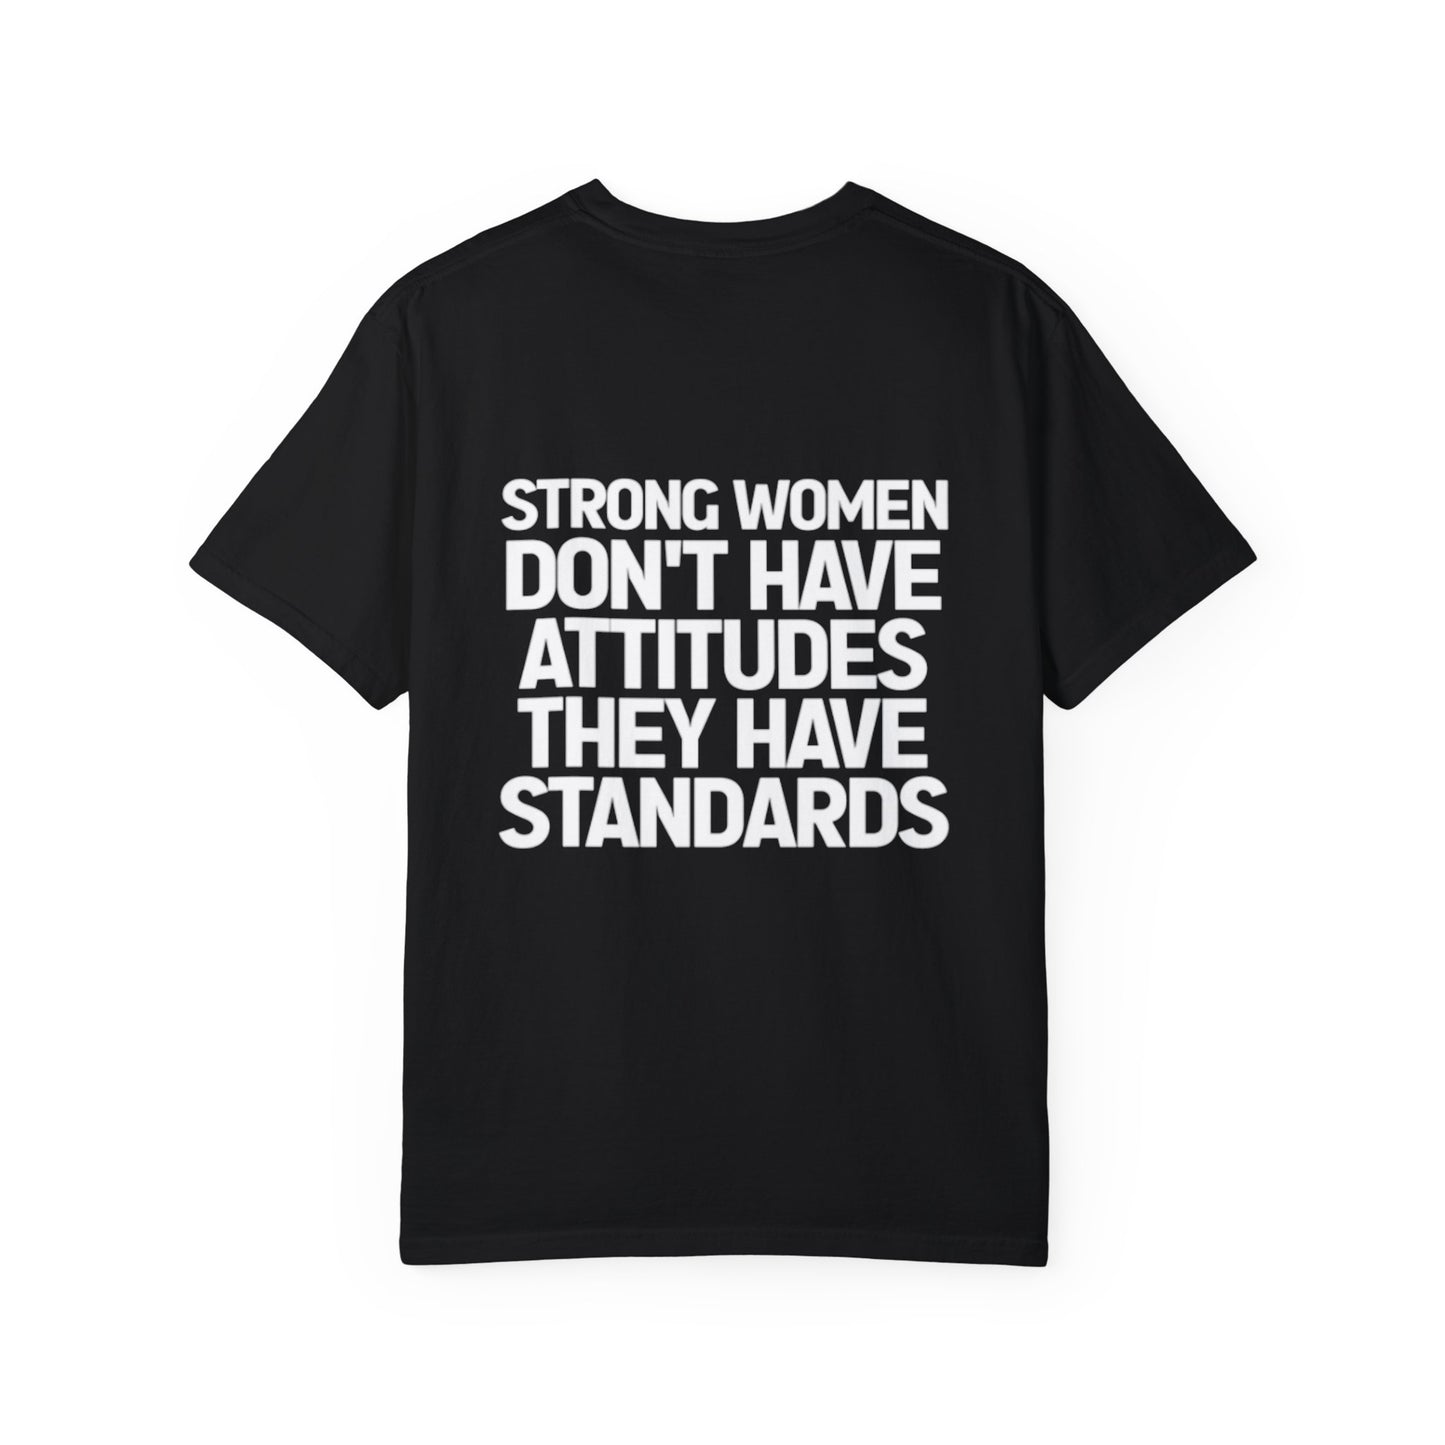 Standards T-shirt